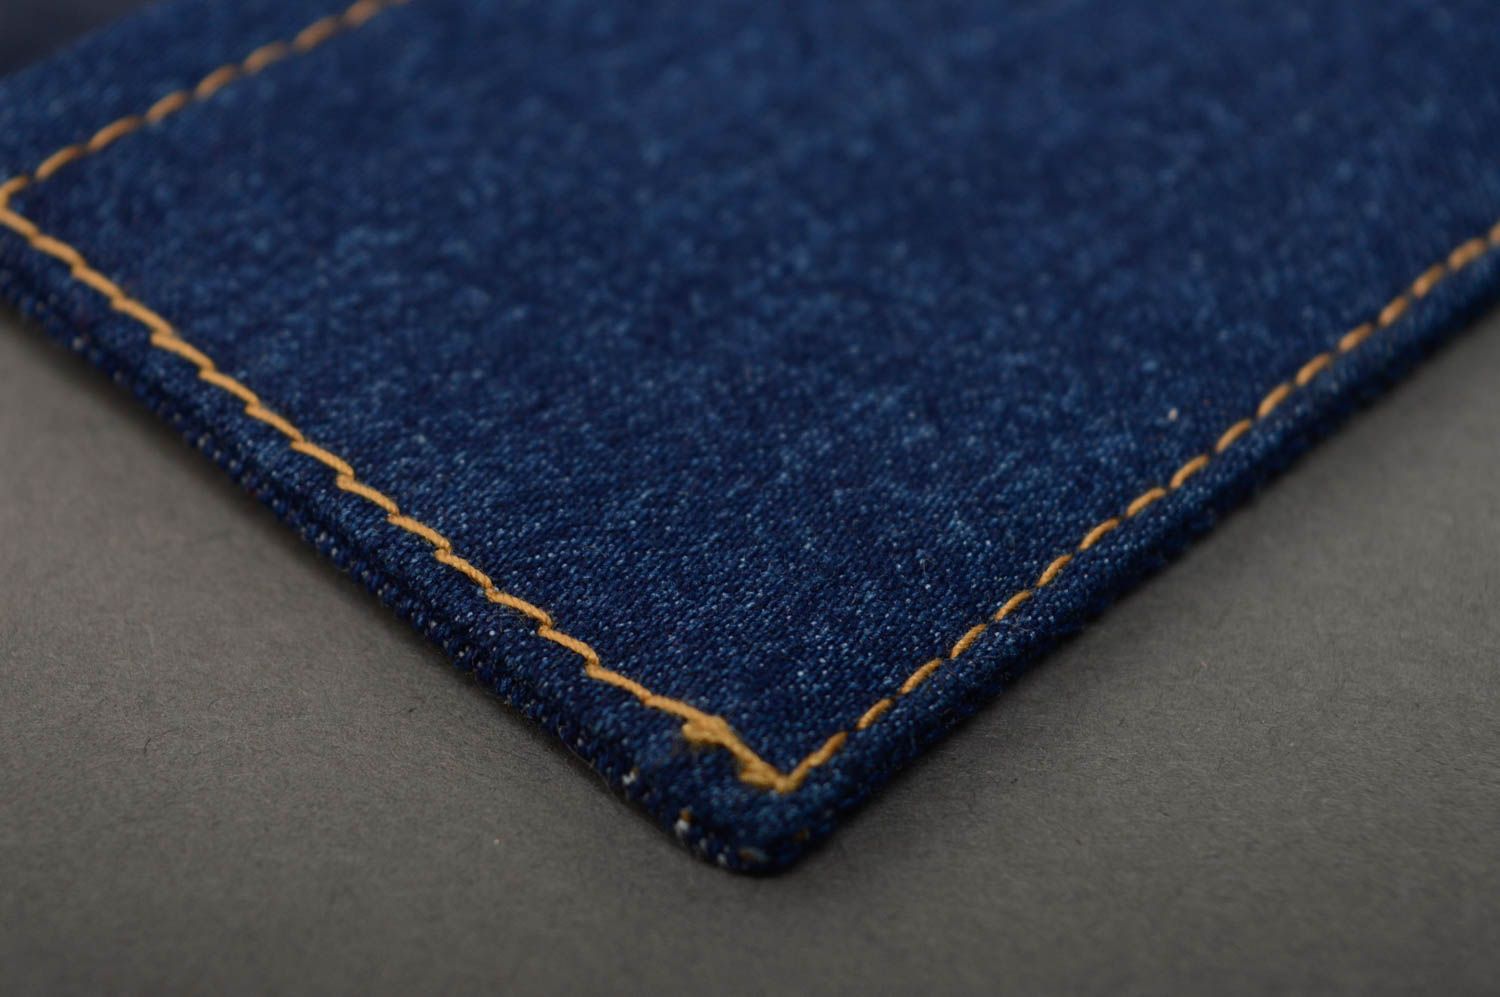 Copertina per taccuino fatta a mano di jeans con ricamo copertina blocco note foto 5